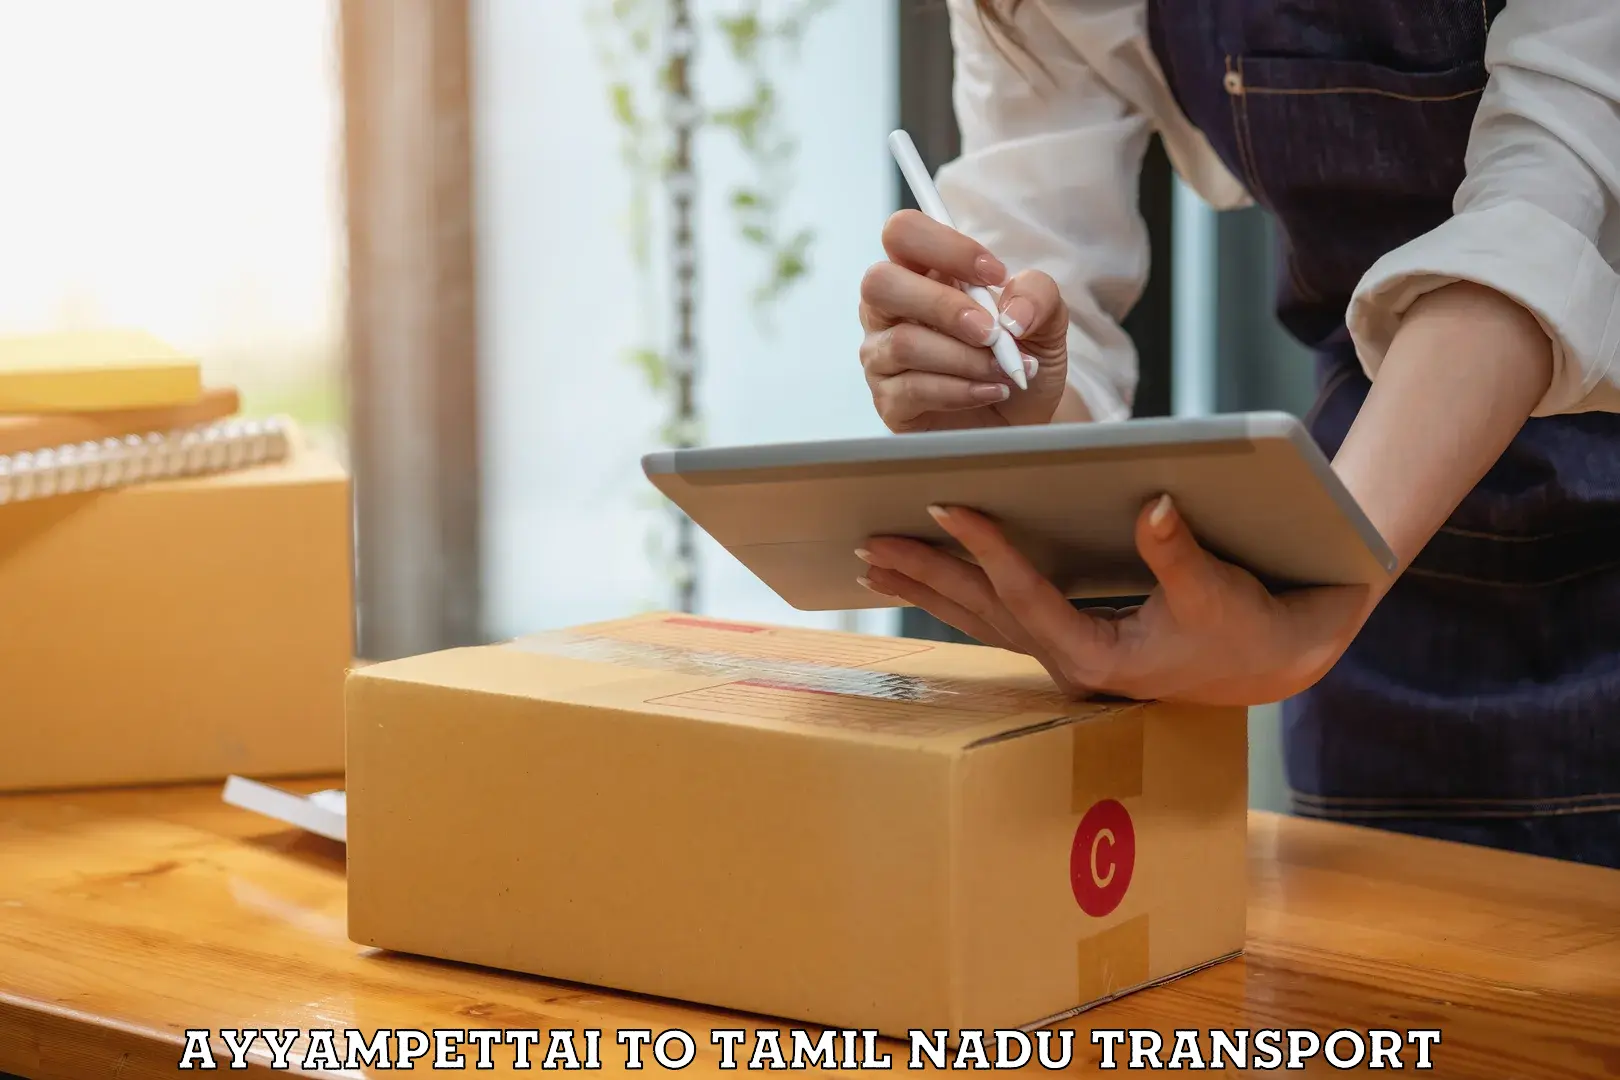 Furniture transport service Ayyampettai to Thiruthuraipoondi